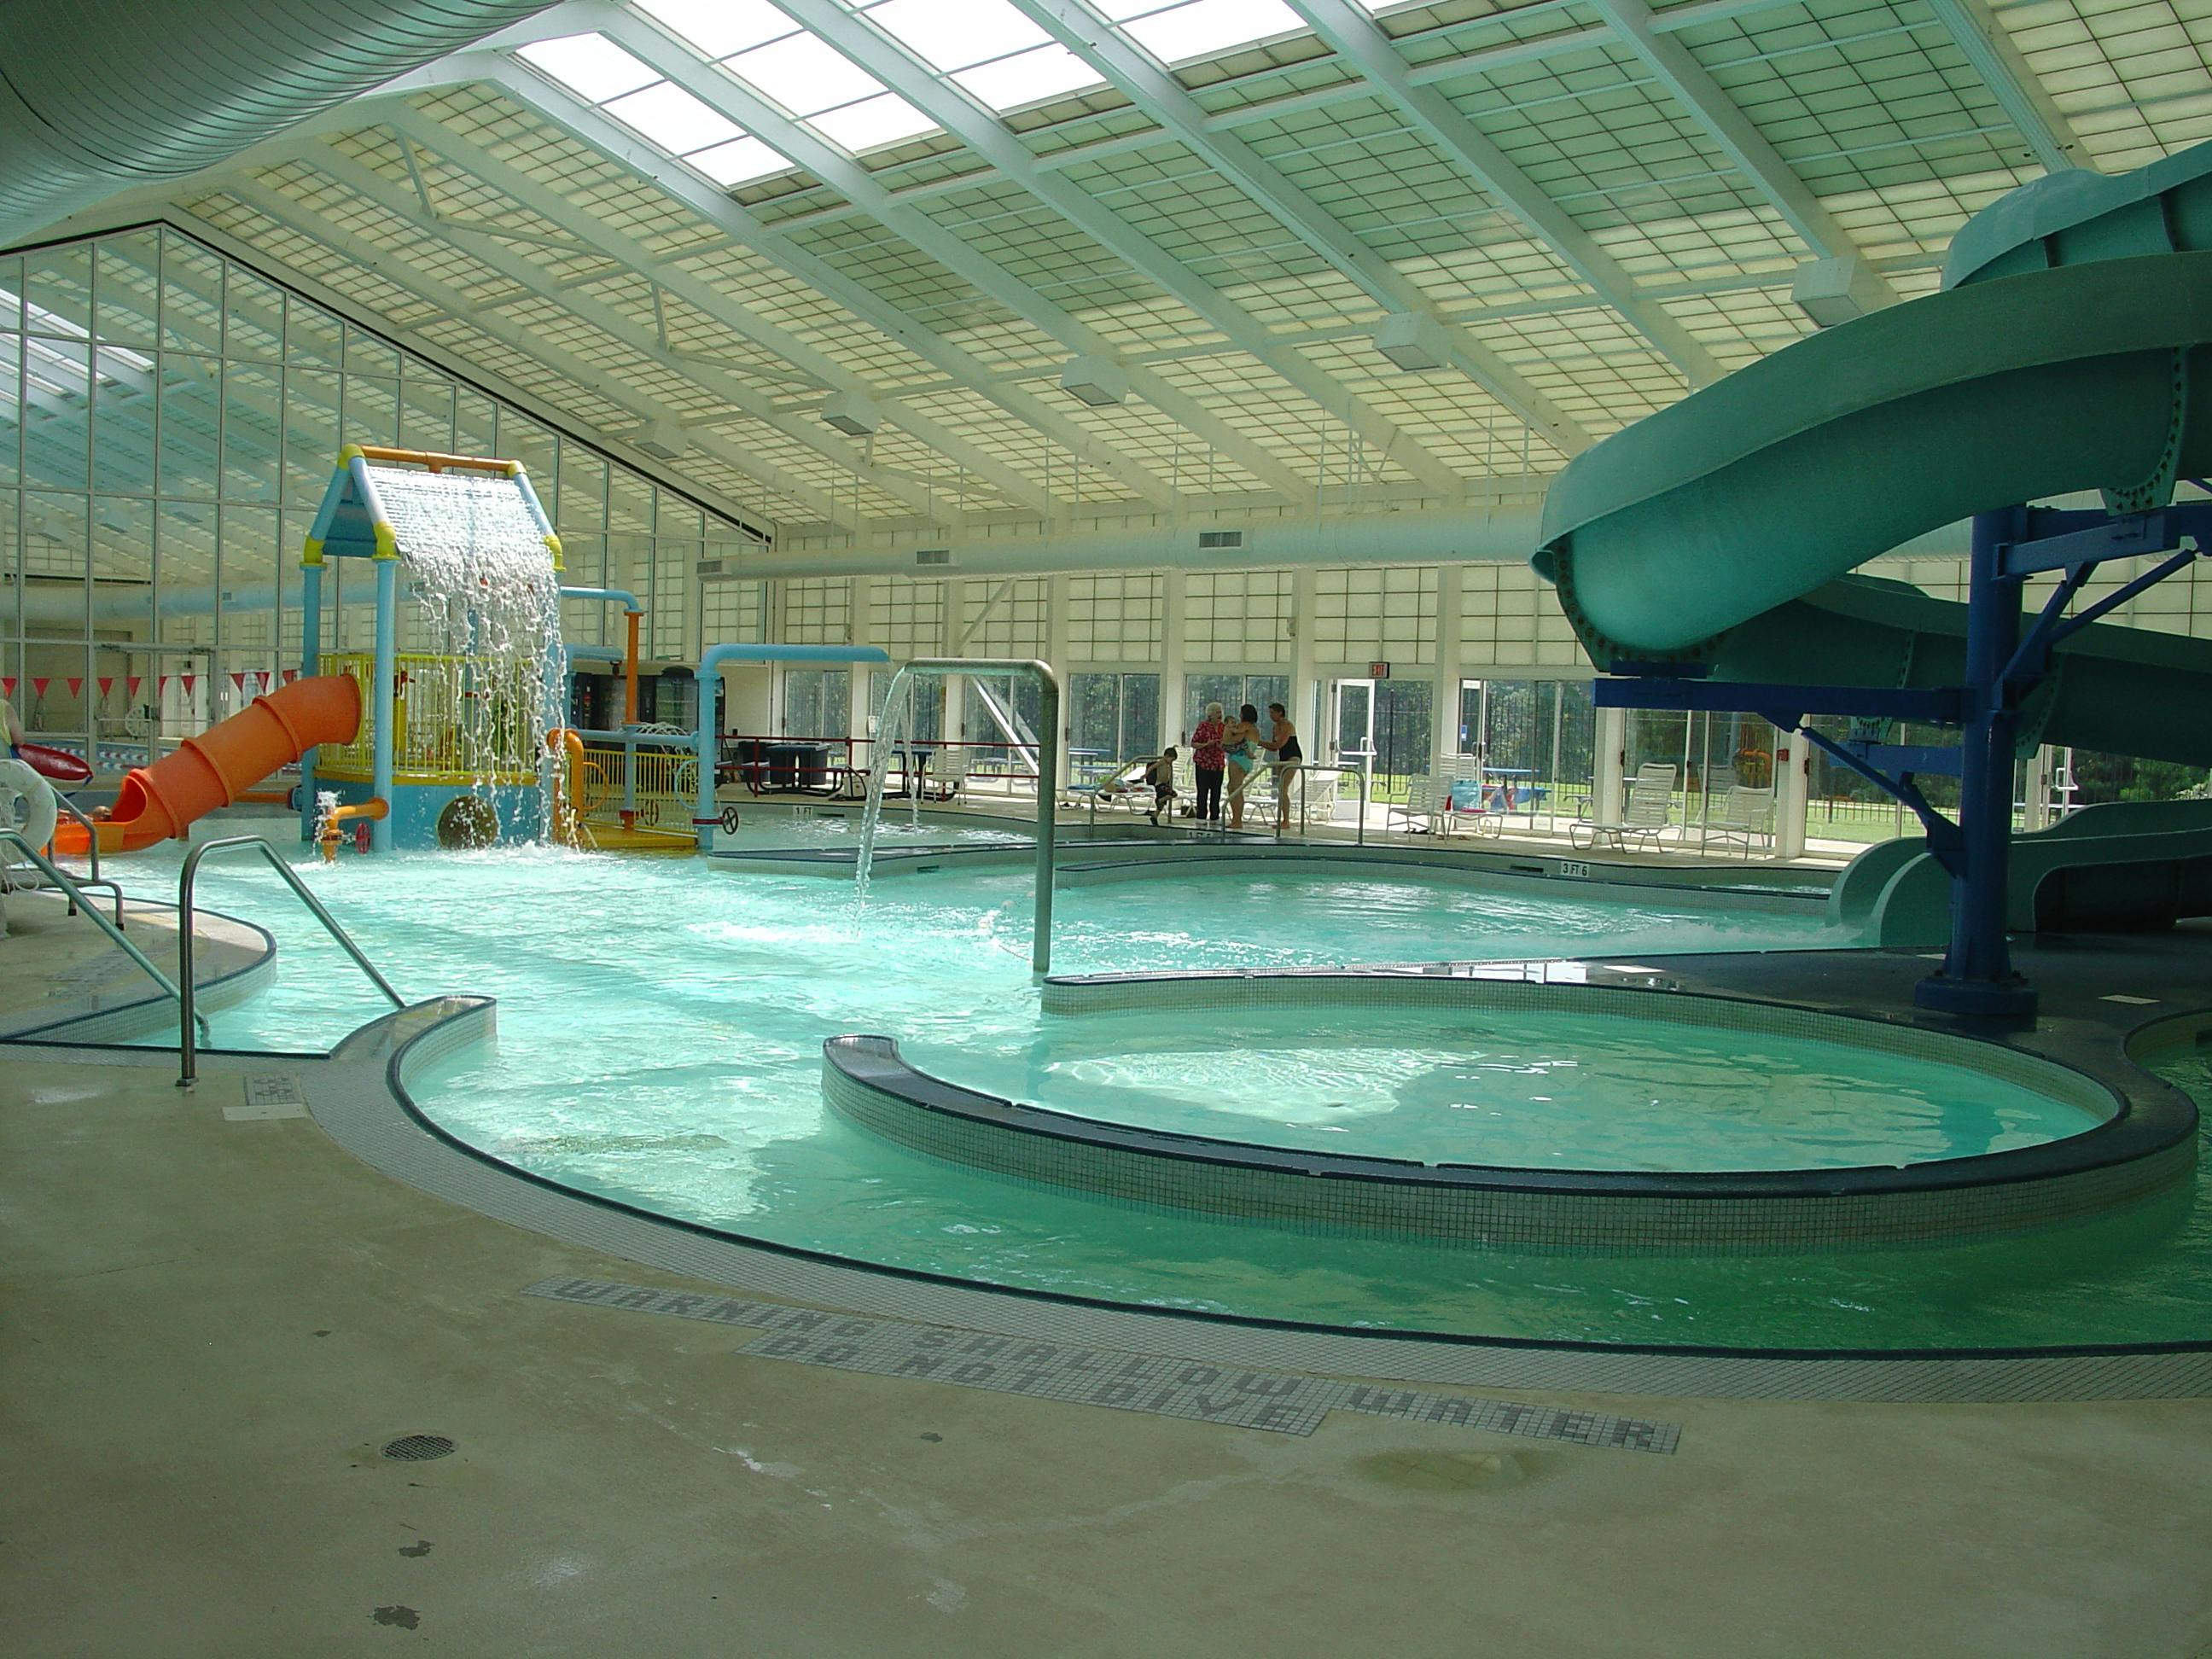 Bogan Park Aquatic Center